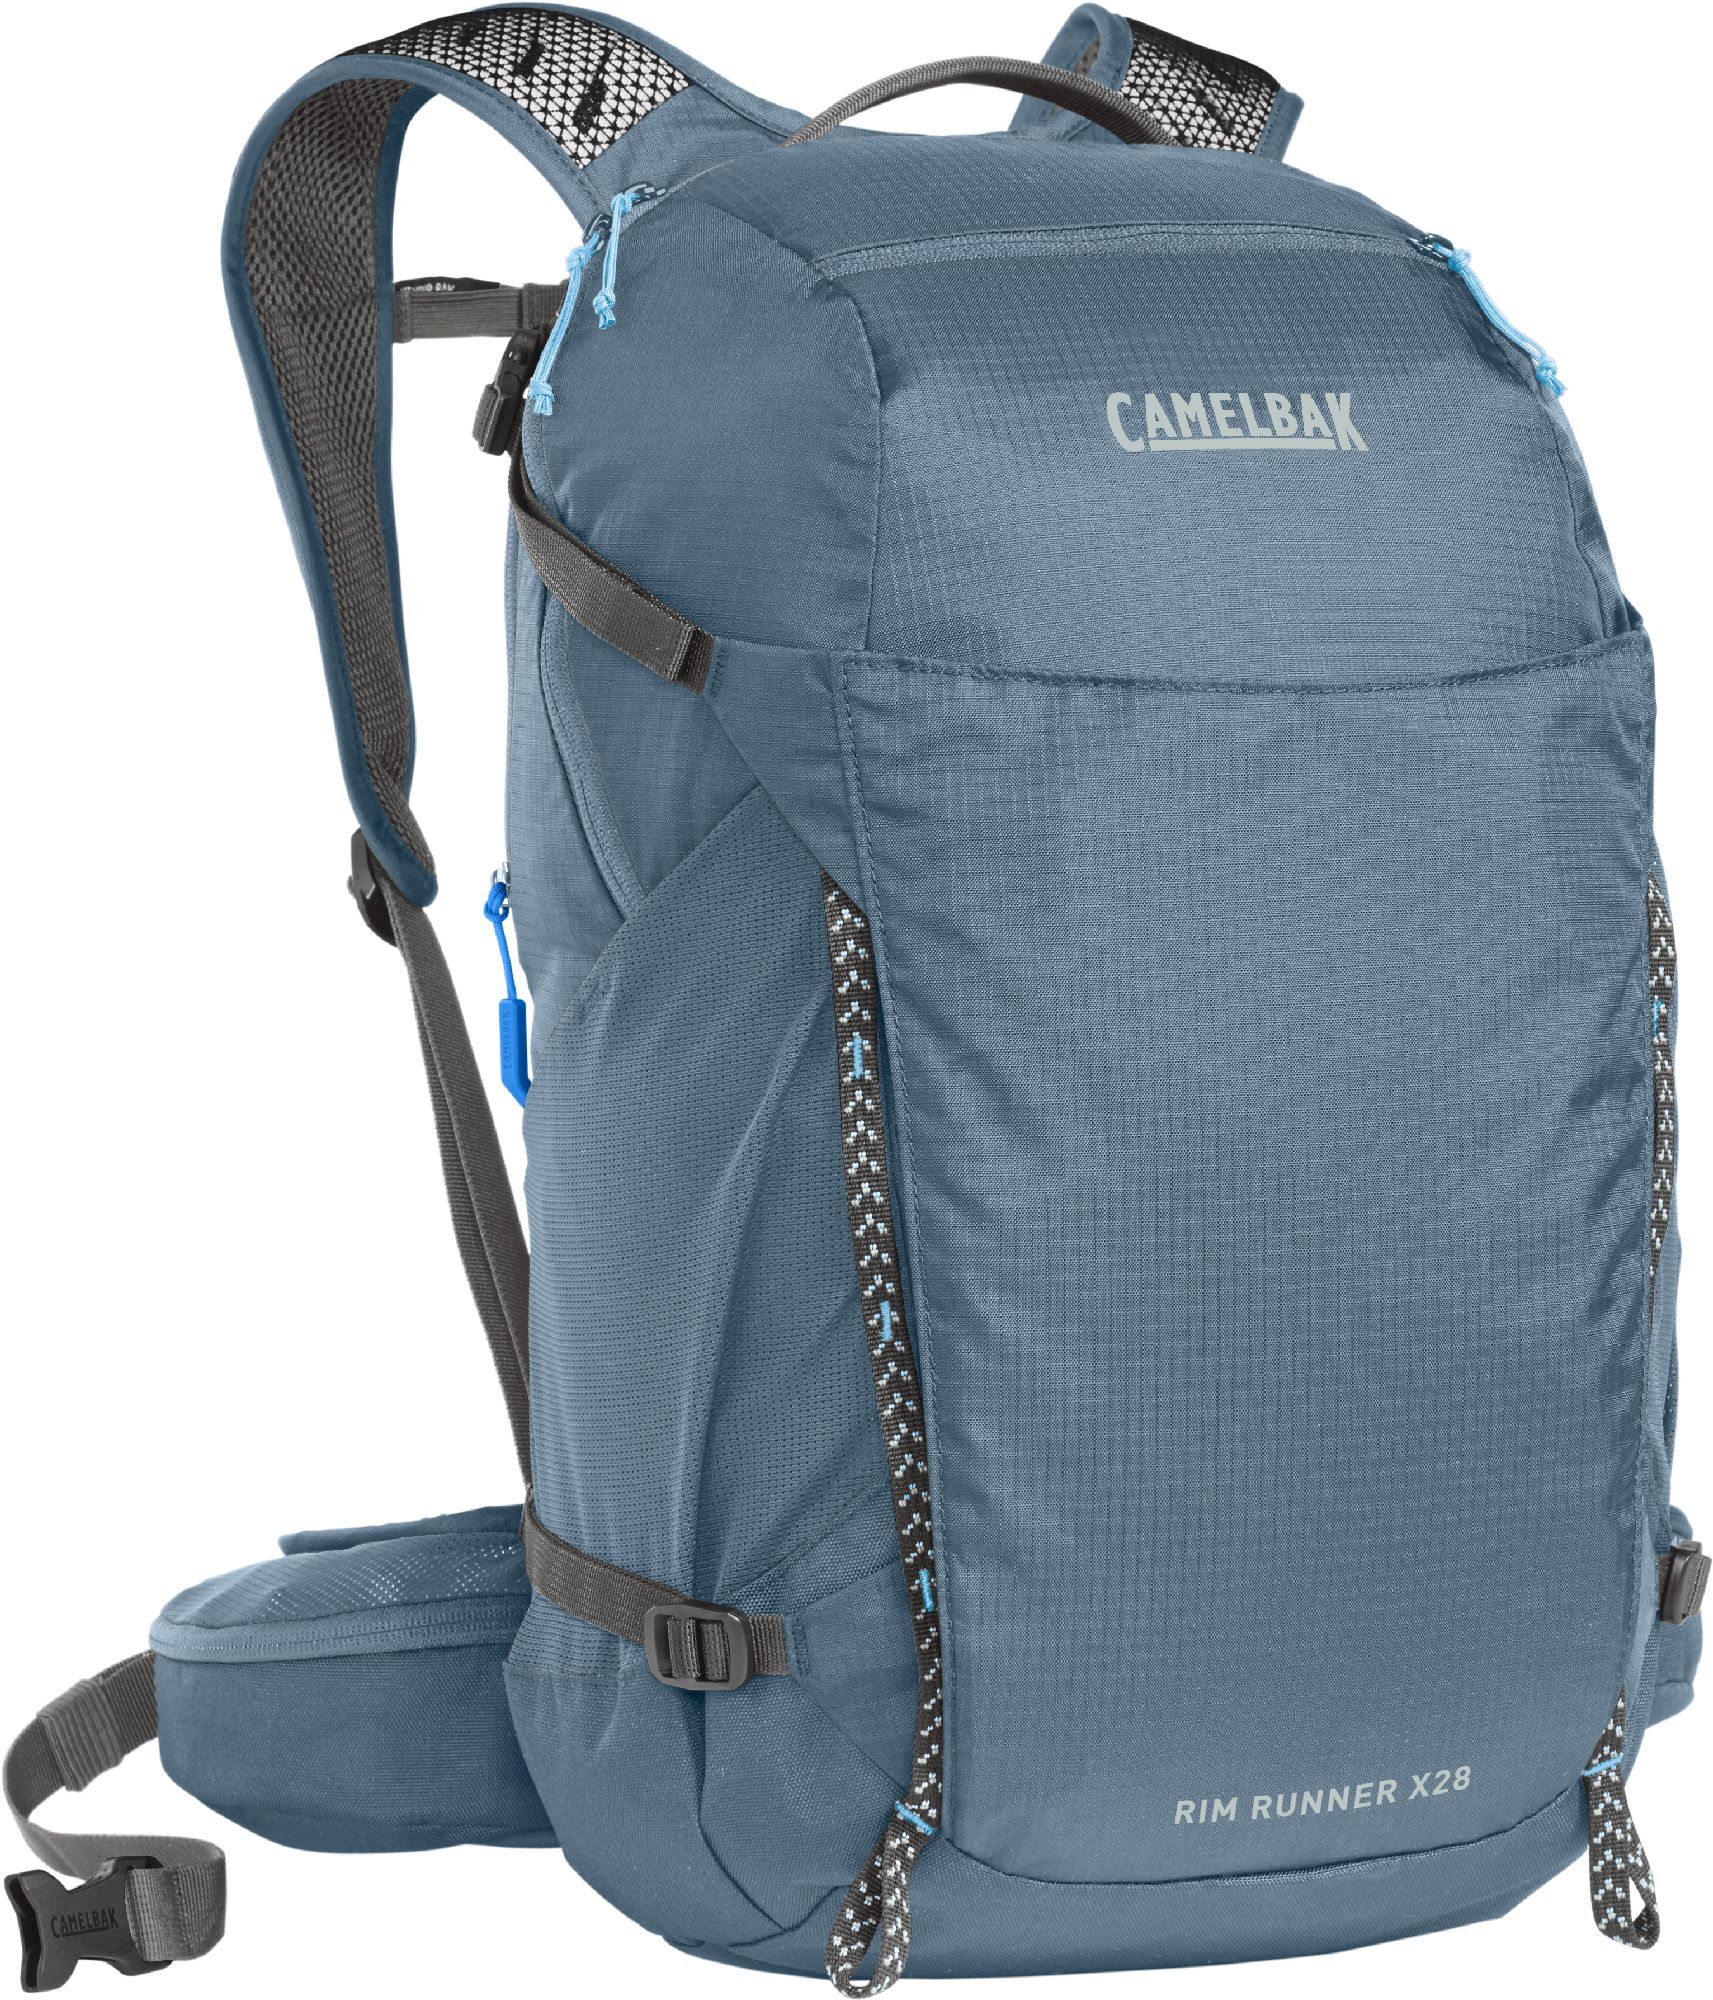 Camelbak Women's Rim Runner X28 Terra - Hydration backpack | Hardloop